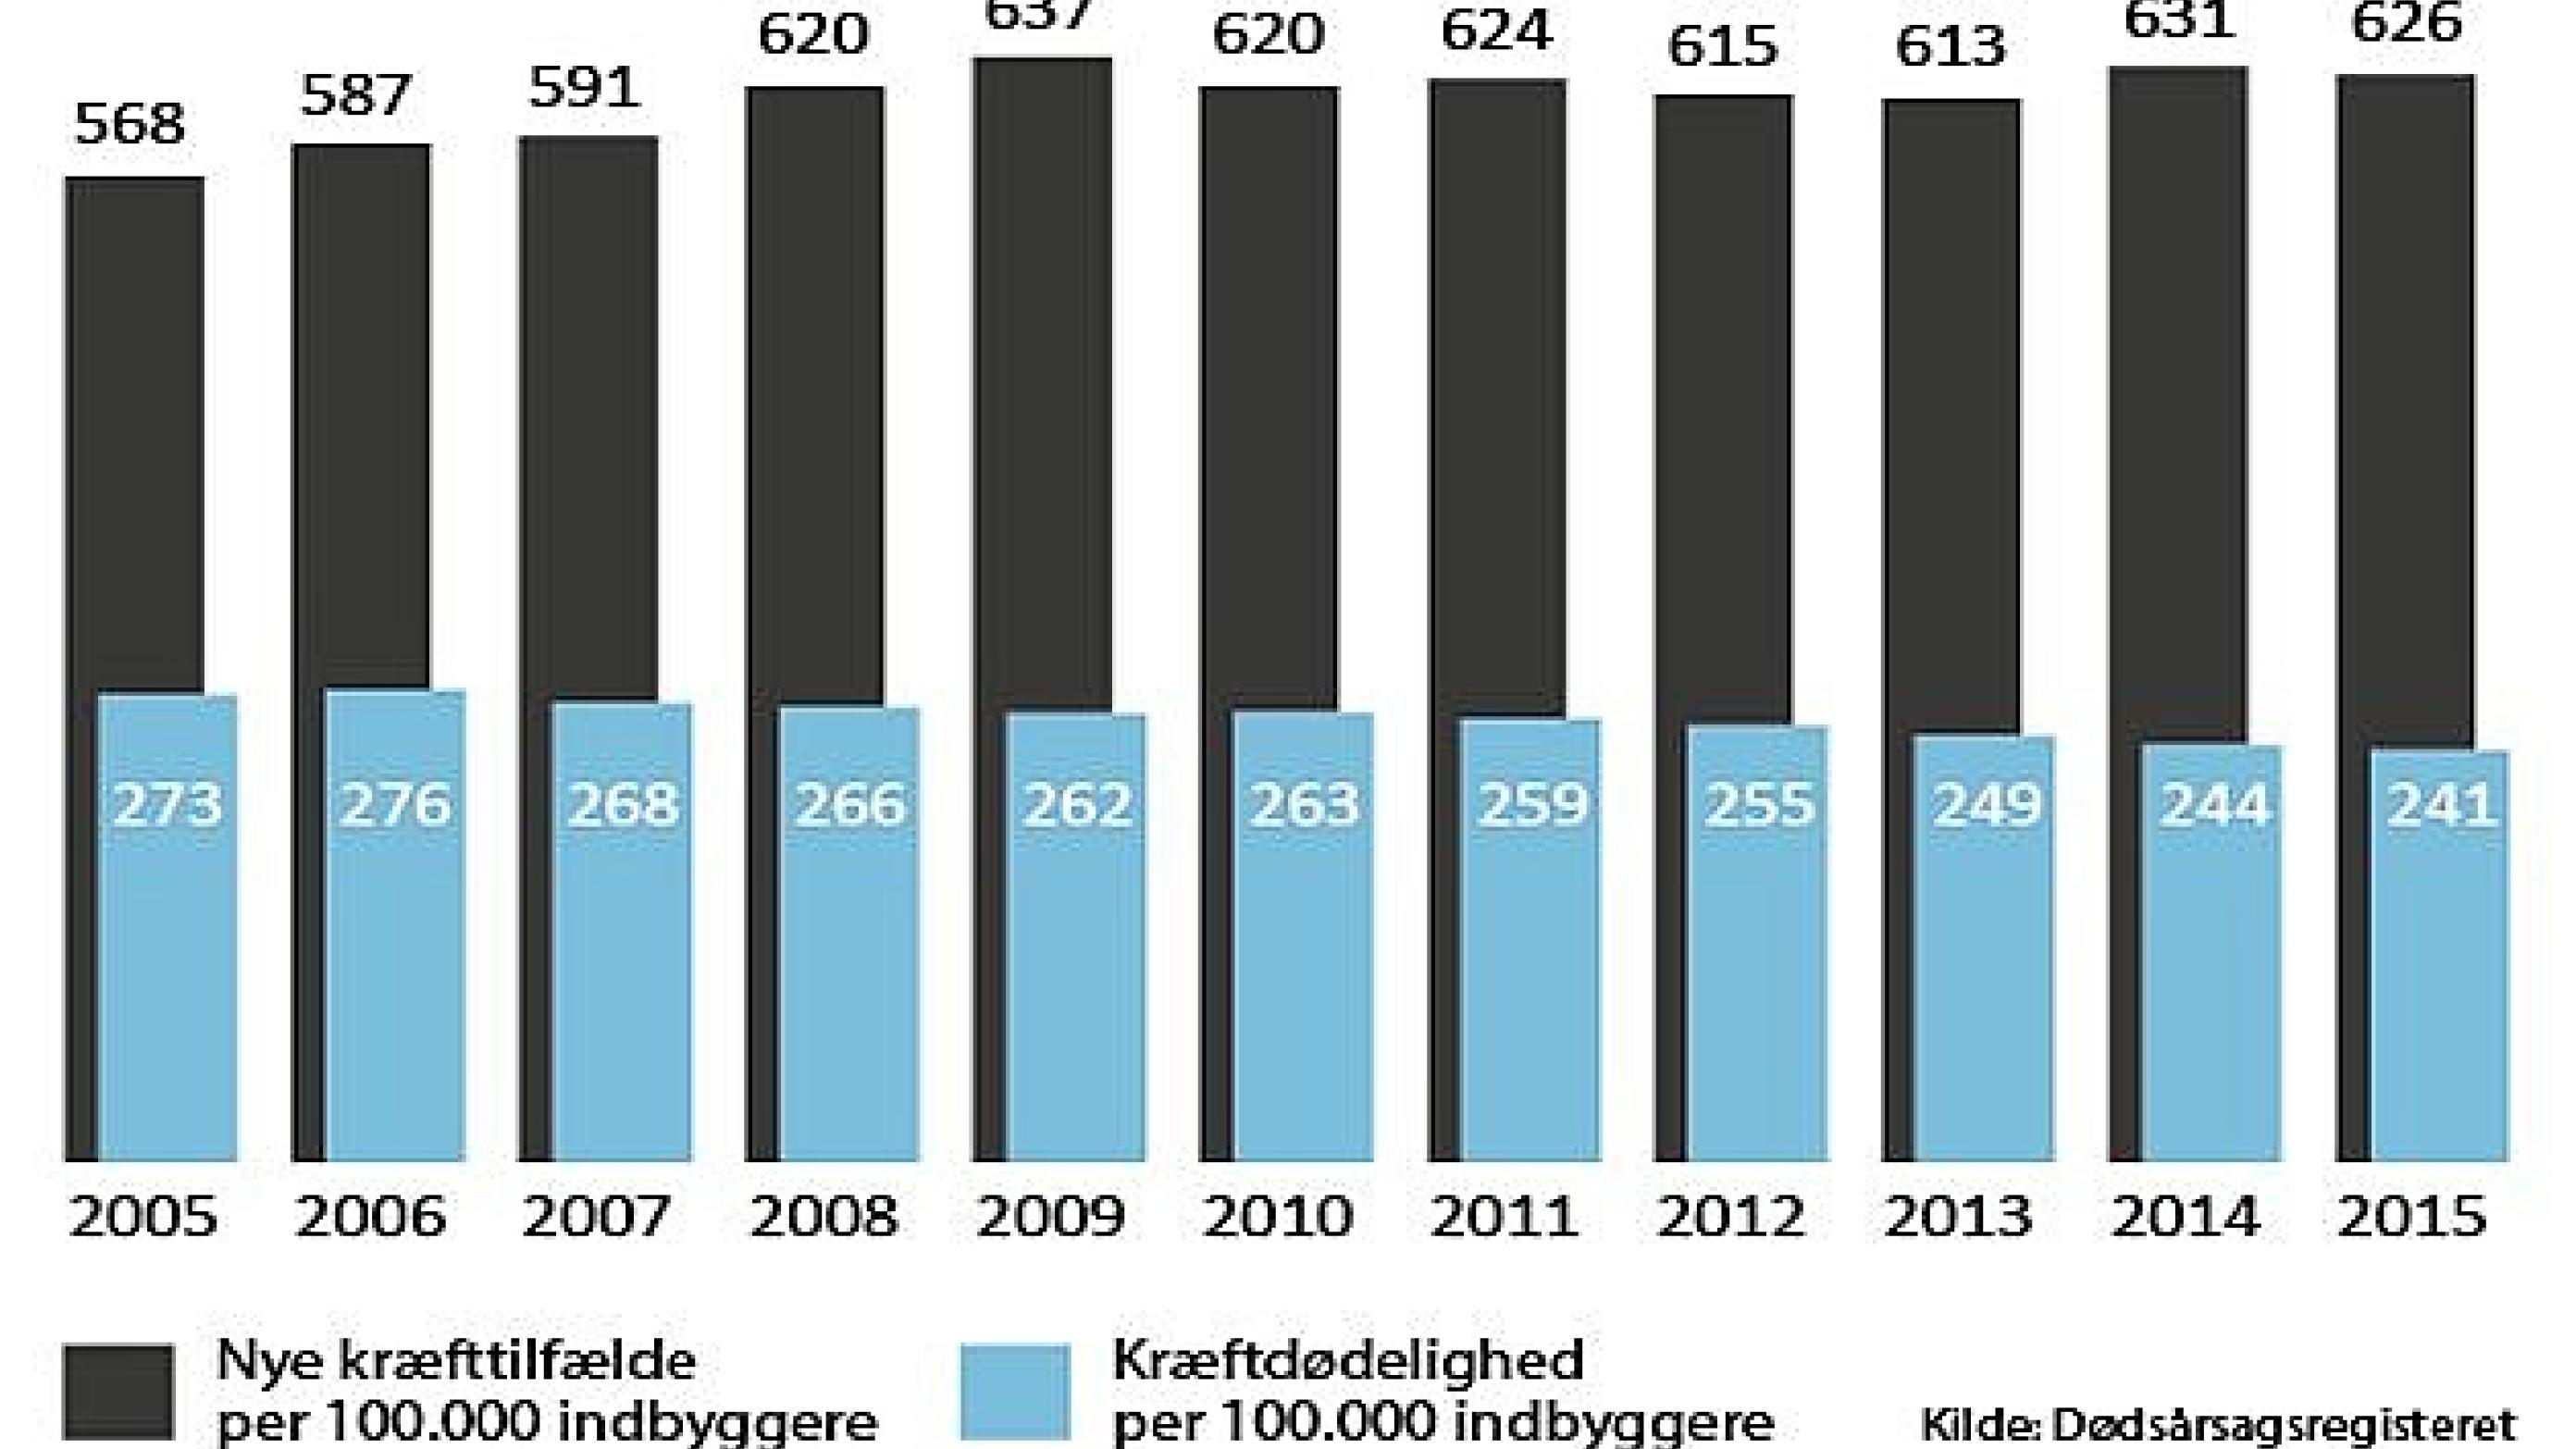 Kræftdødeligheden er faldet støt år efter år, så rekordfå danskere nu dør af kræft. NB: Figuren viser den aldersstandardiserede kræftdødelighed.
Kilde: Dødsårsagsregistret.